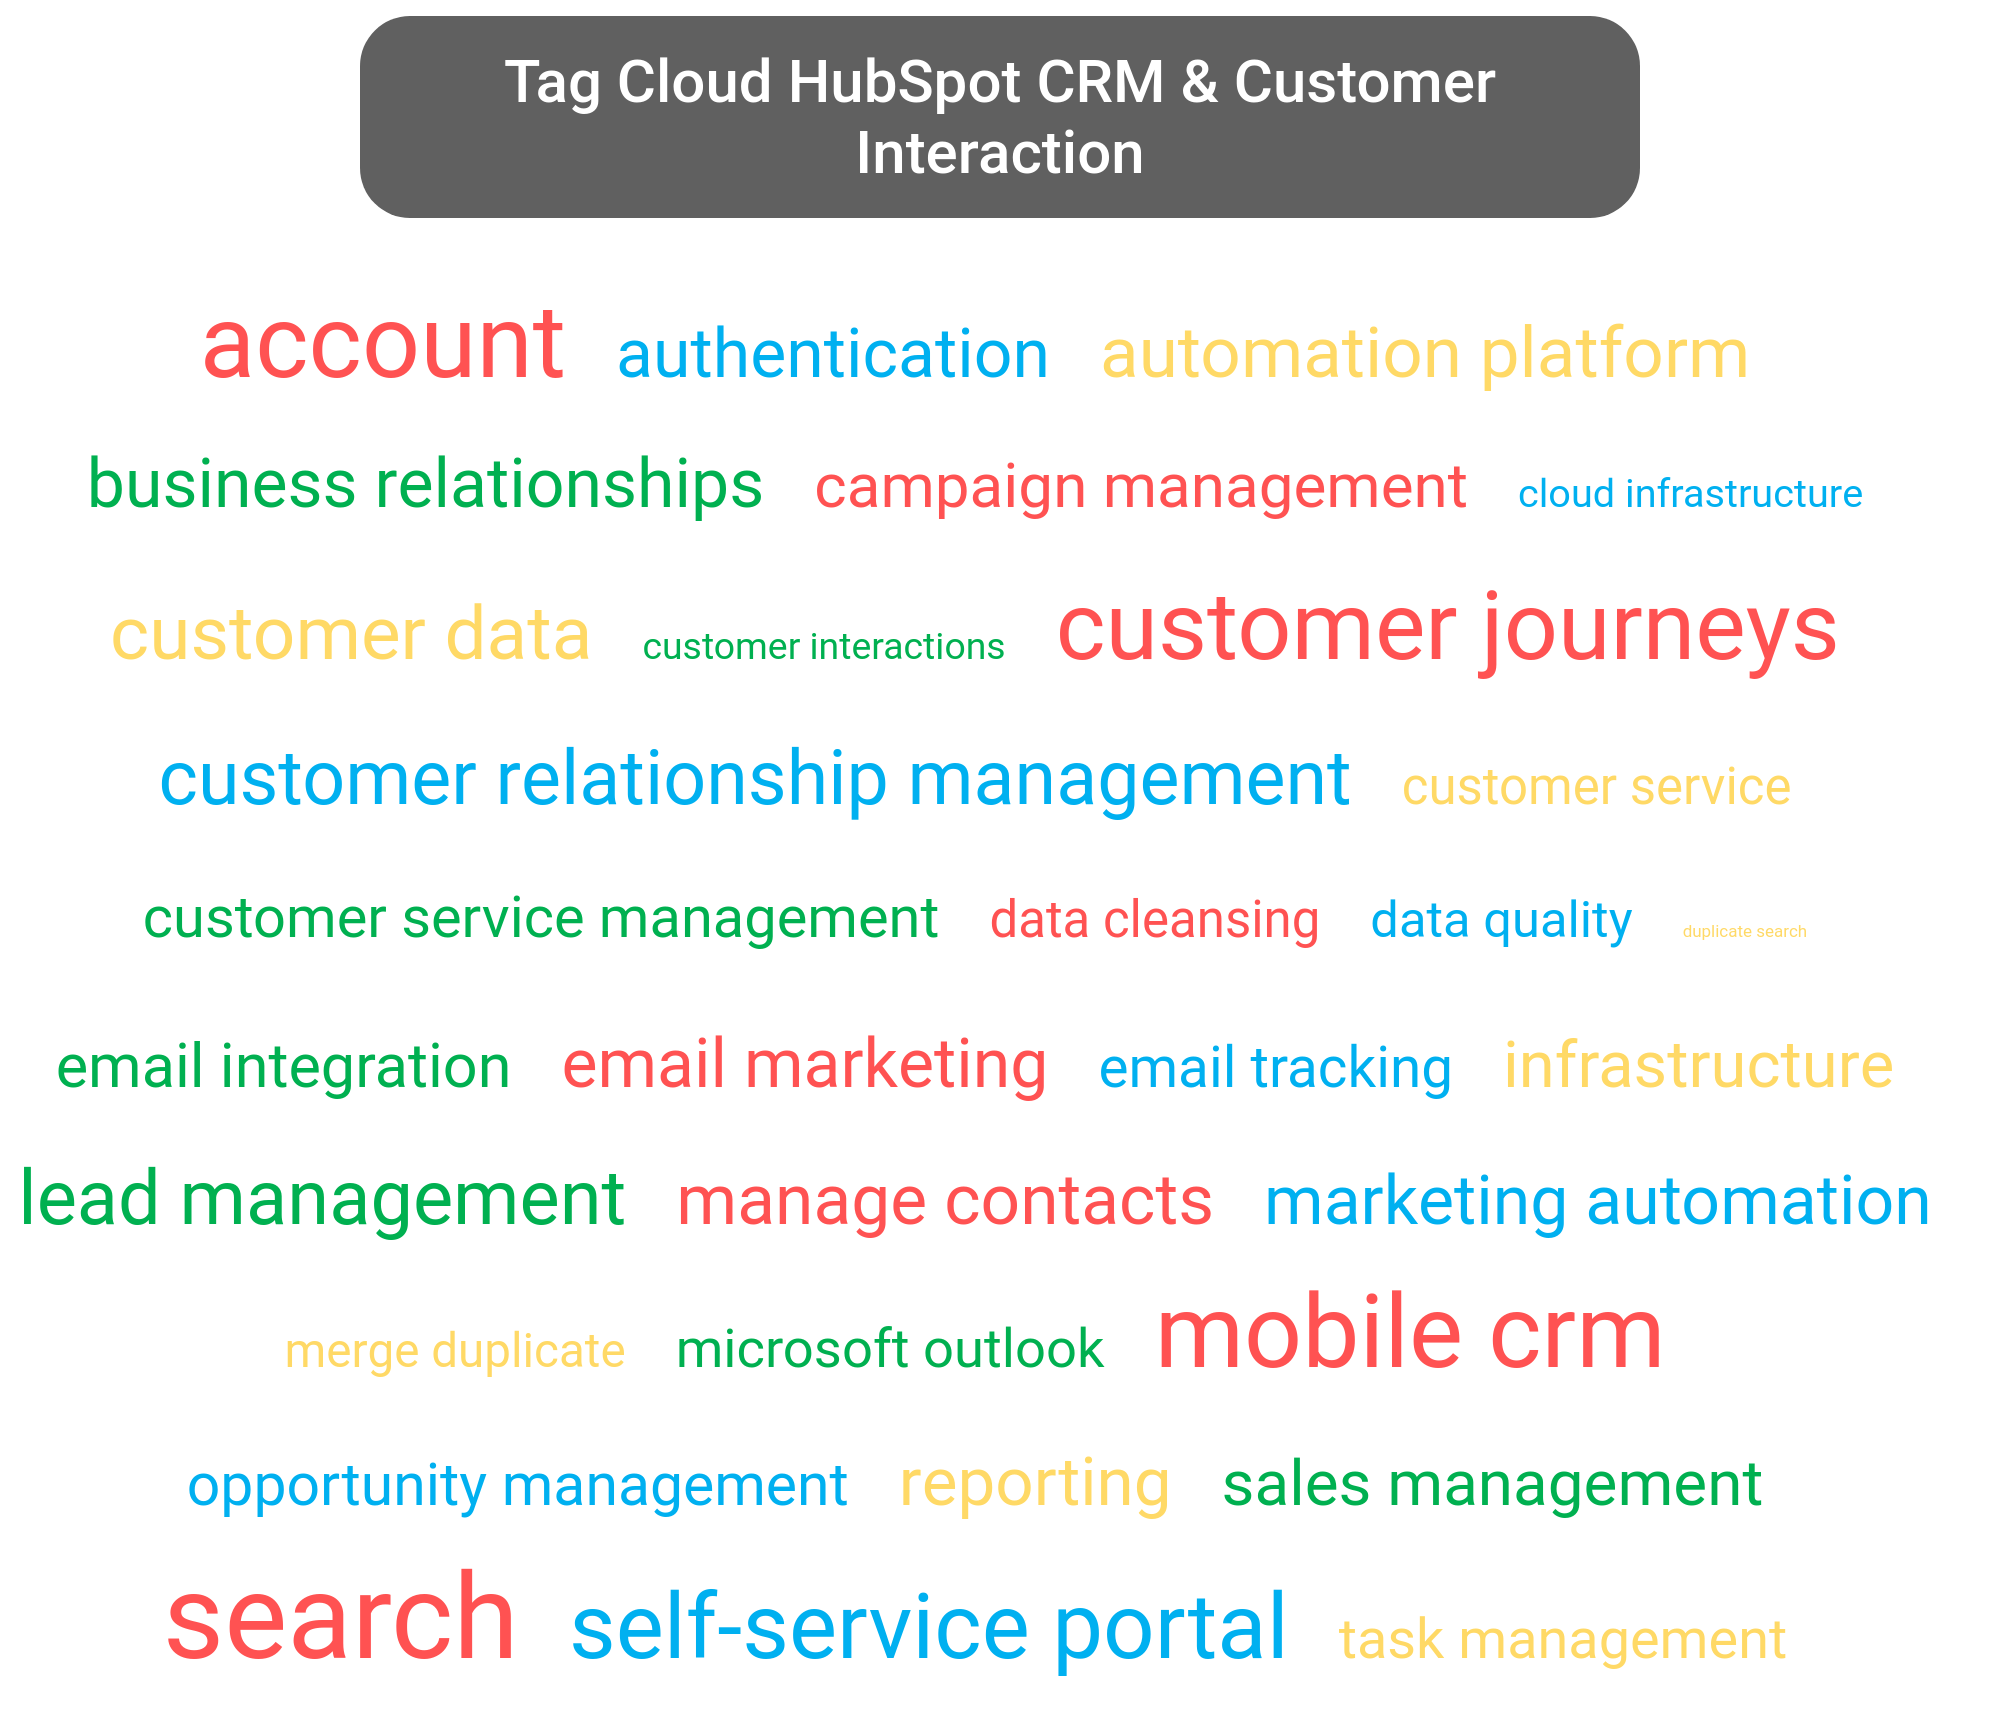 Tag cloud of the HubSpot CRM tools.